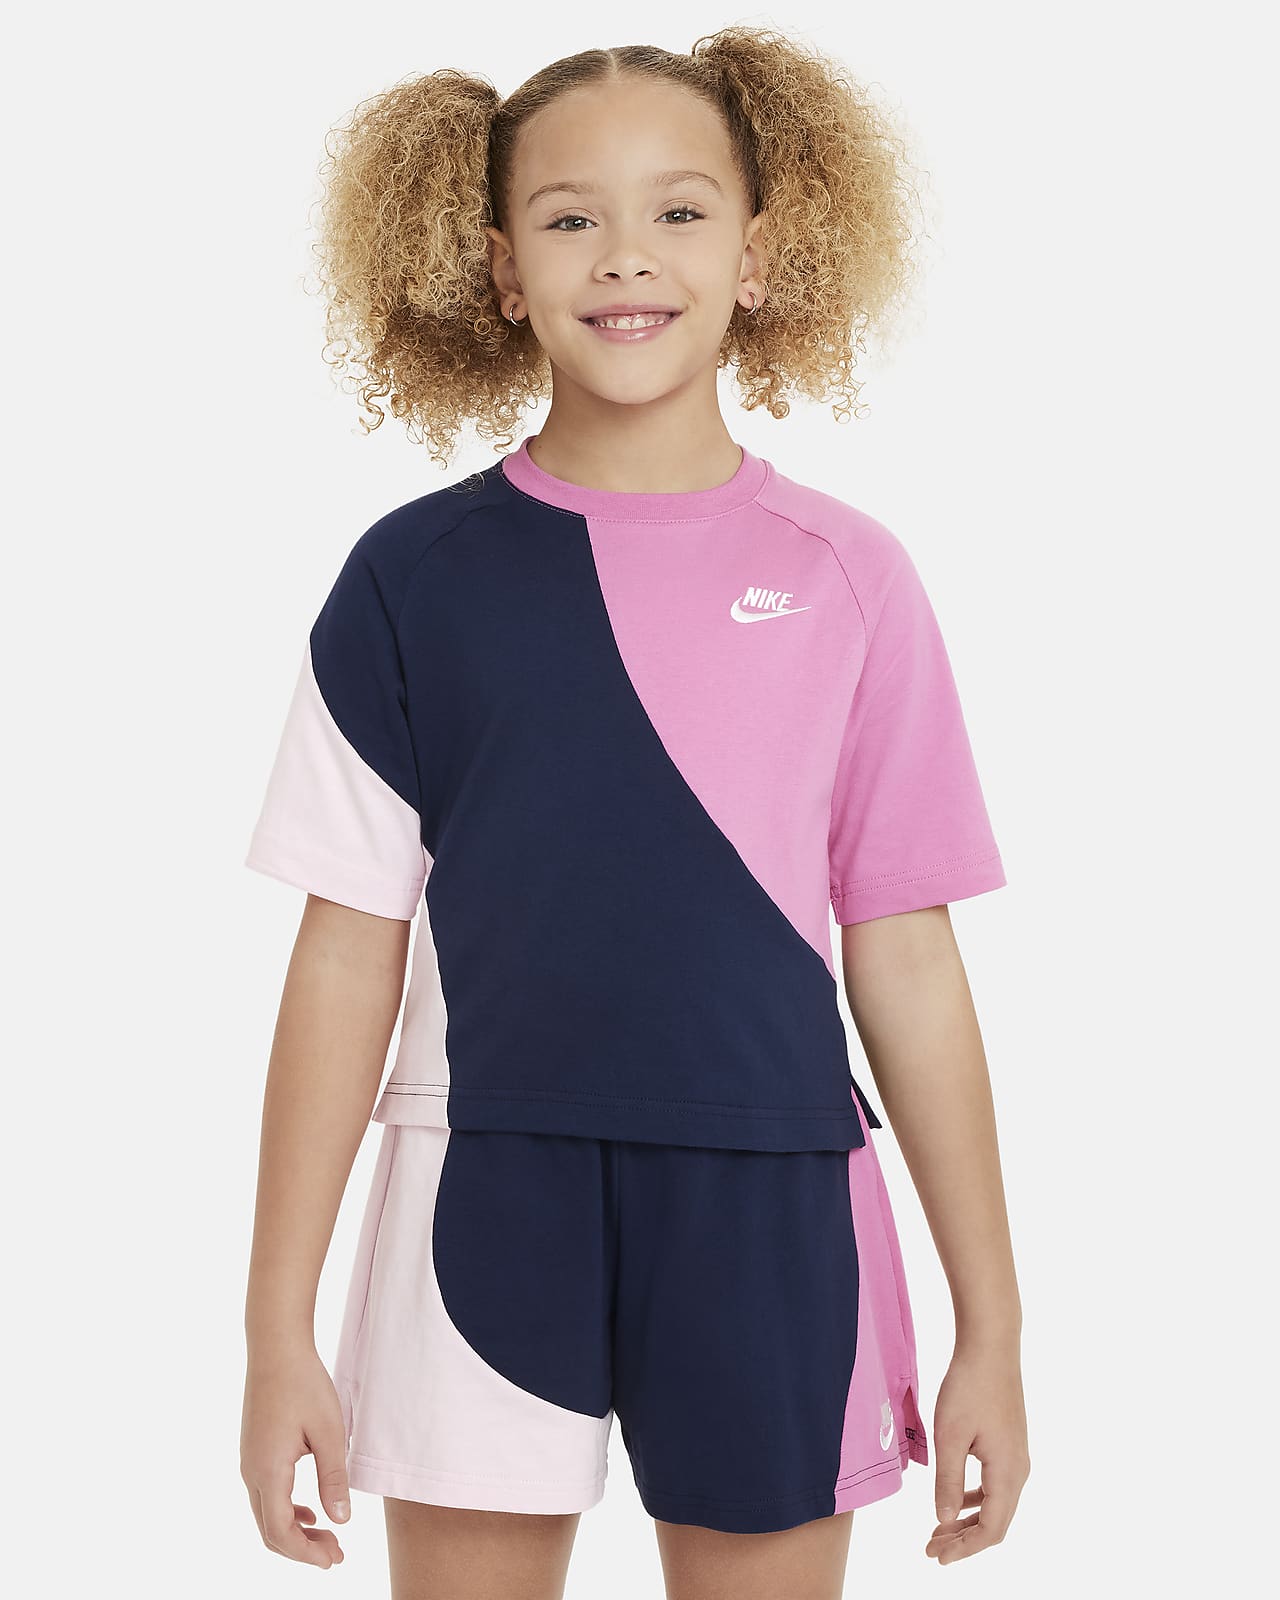 Nike Sportswear Older Kids' (Girls') Jersey Top